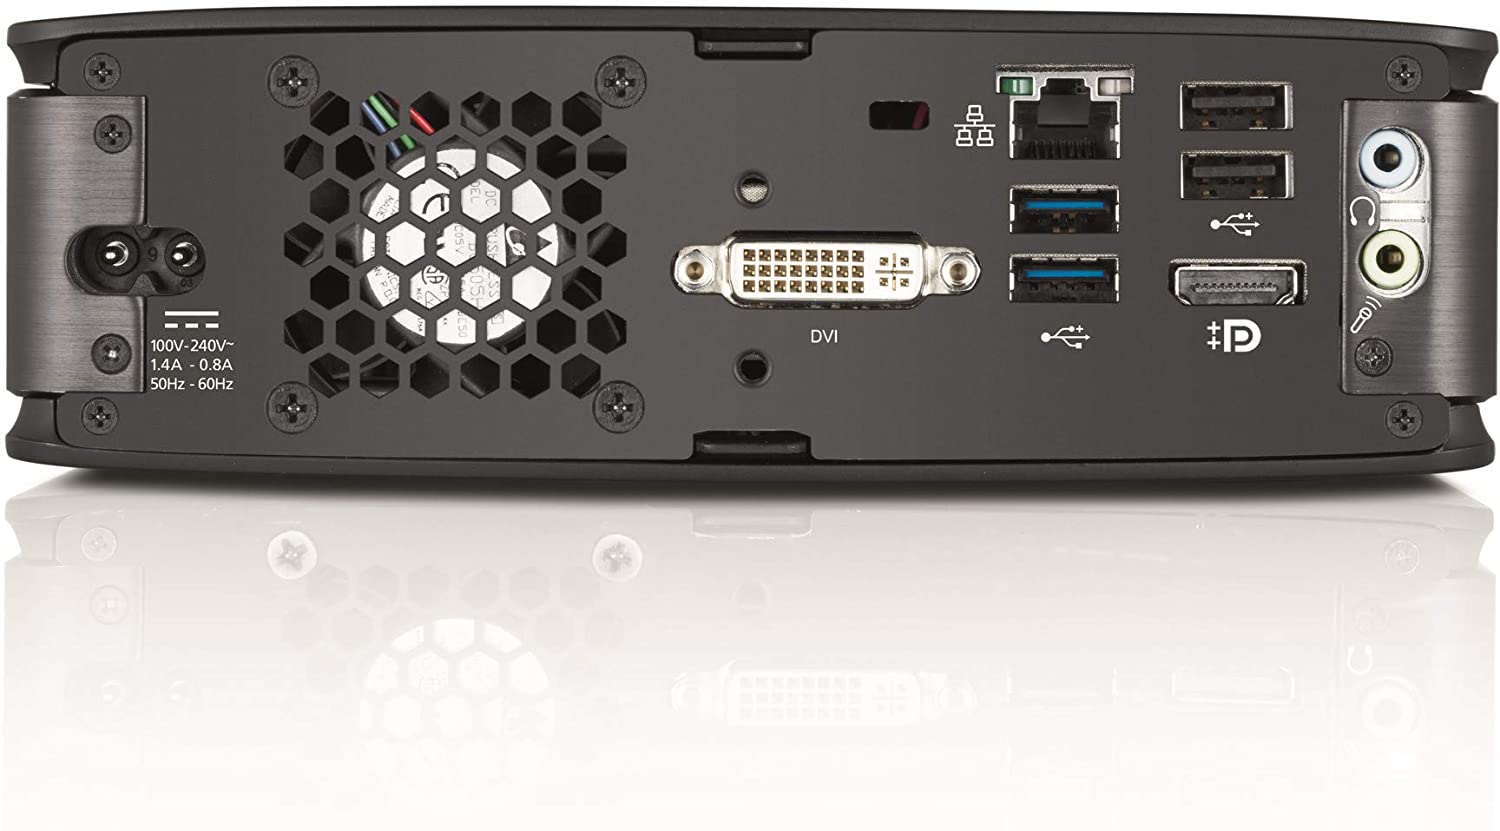 Fujitsu Esprimo Q920 – Mini-PC 0 Watt Intel Core i5 4570t 8 GB 256 GB SSD Win 10 Pro ULTRA SLIM